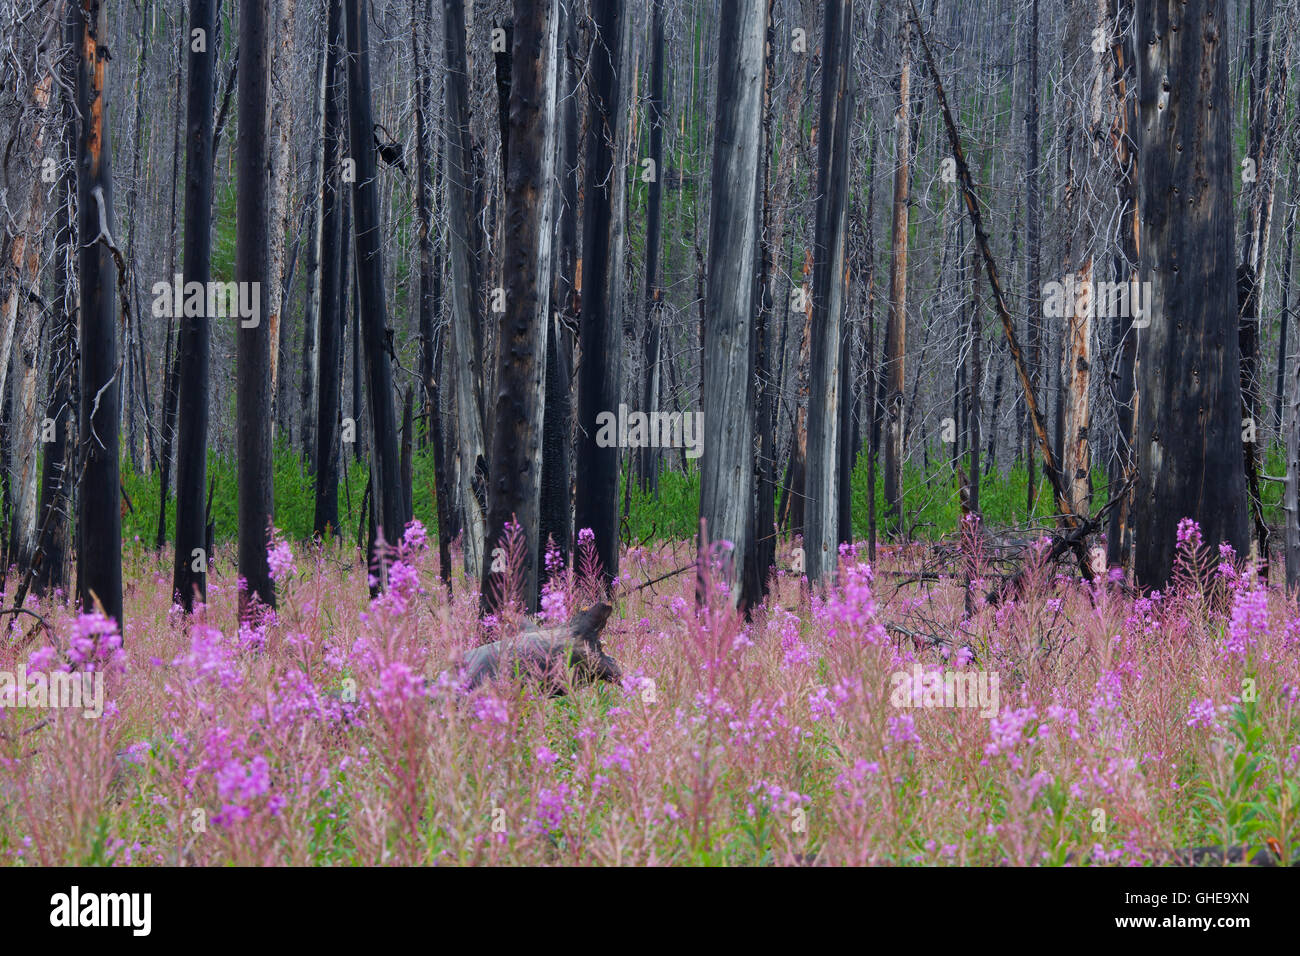 Fireweed / grande willowherb prospera nella foresta tra carbonizzati tronchi d albero dopo wildfire, Kootenay NP, British Columbia, Canada Foto Stock